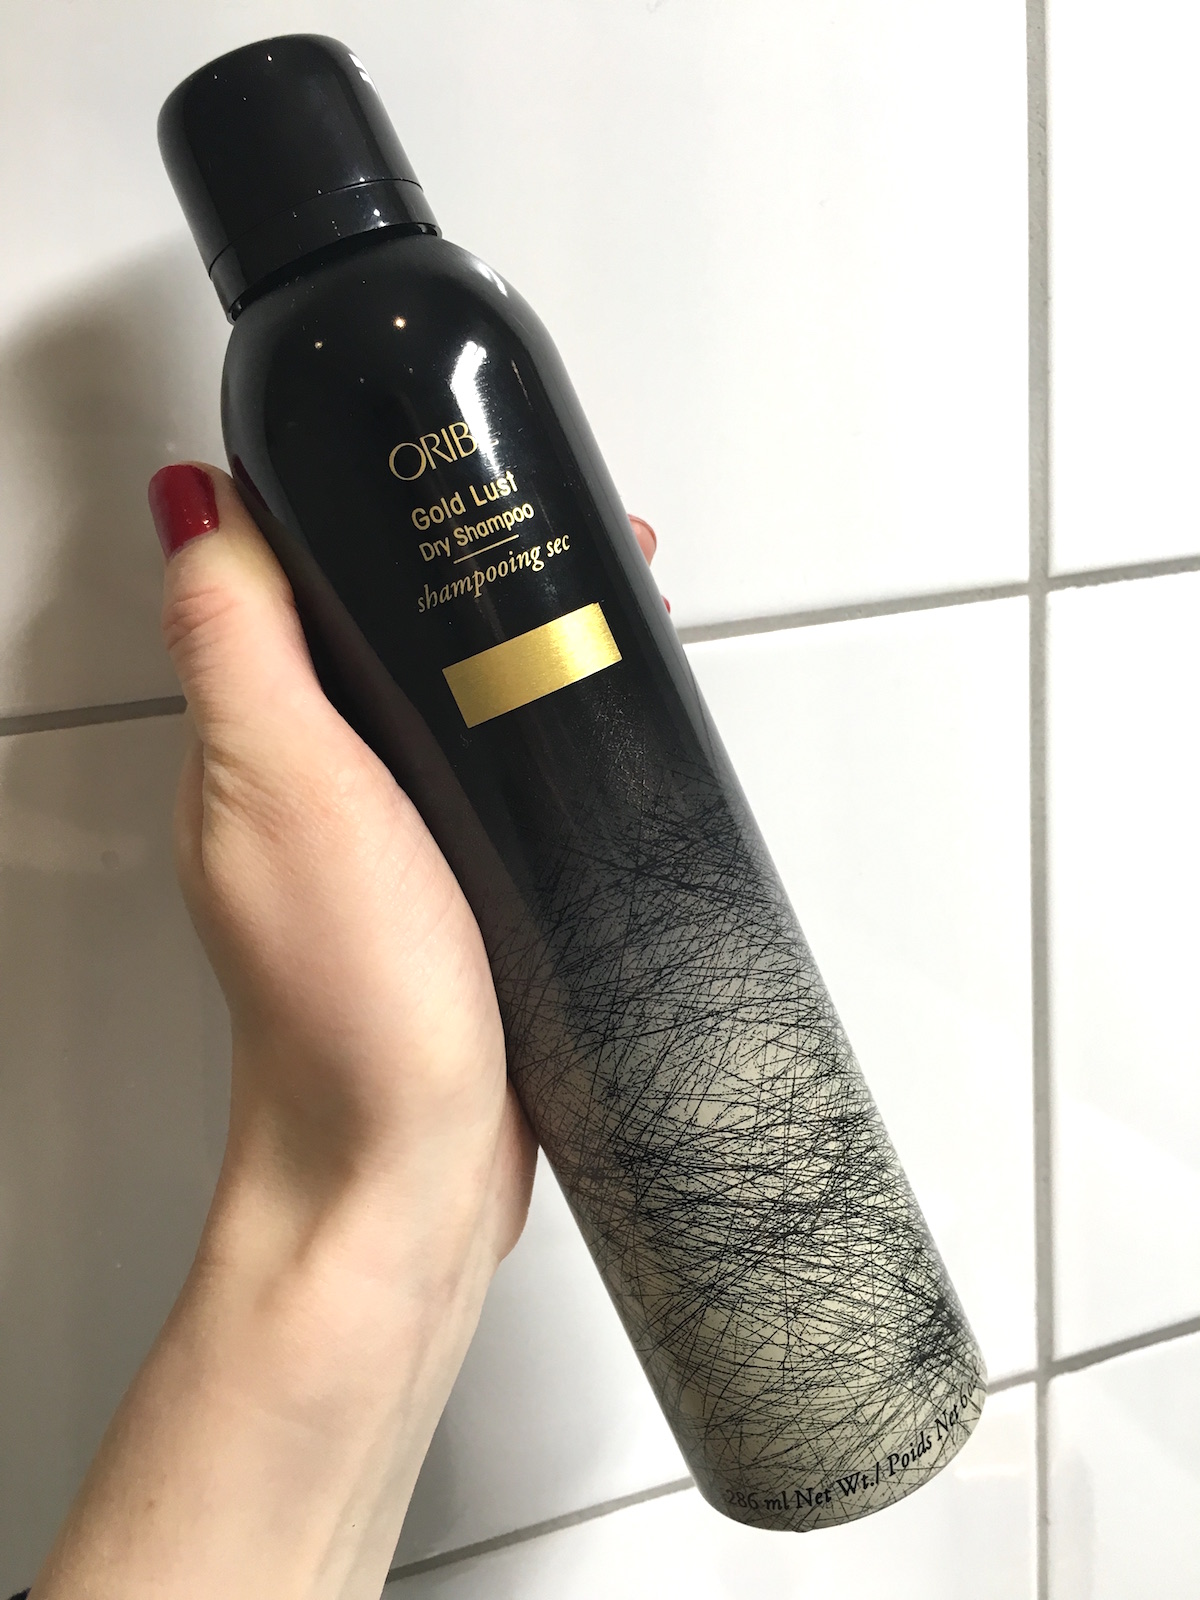 Oribe Gold Lust Dry Shampoo  in hand | skonhetssnack.se